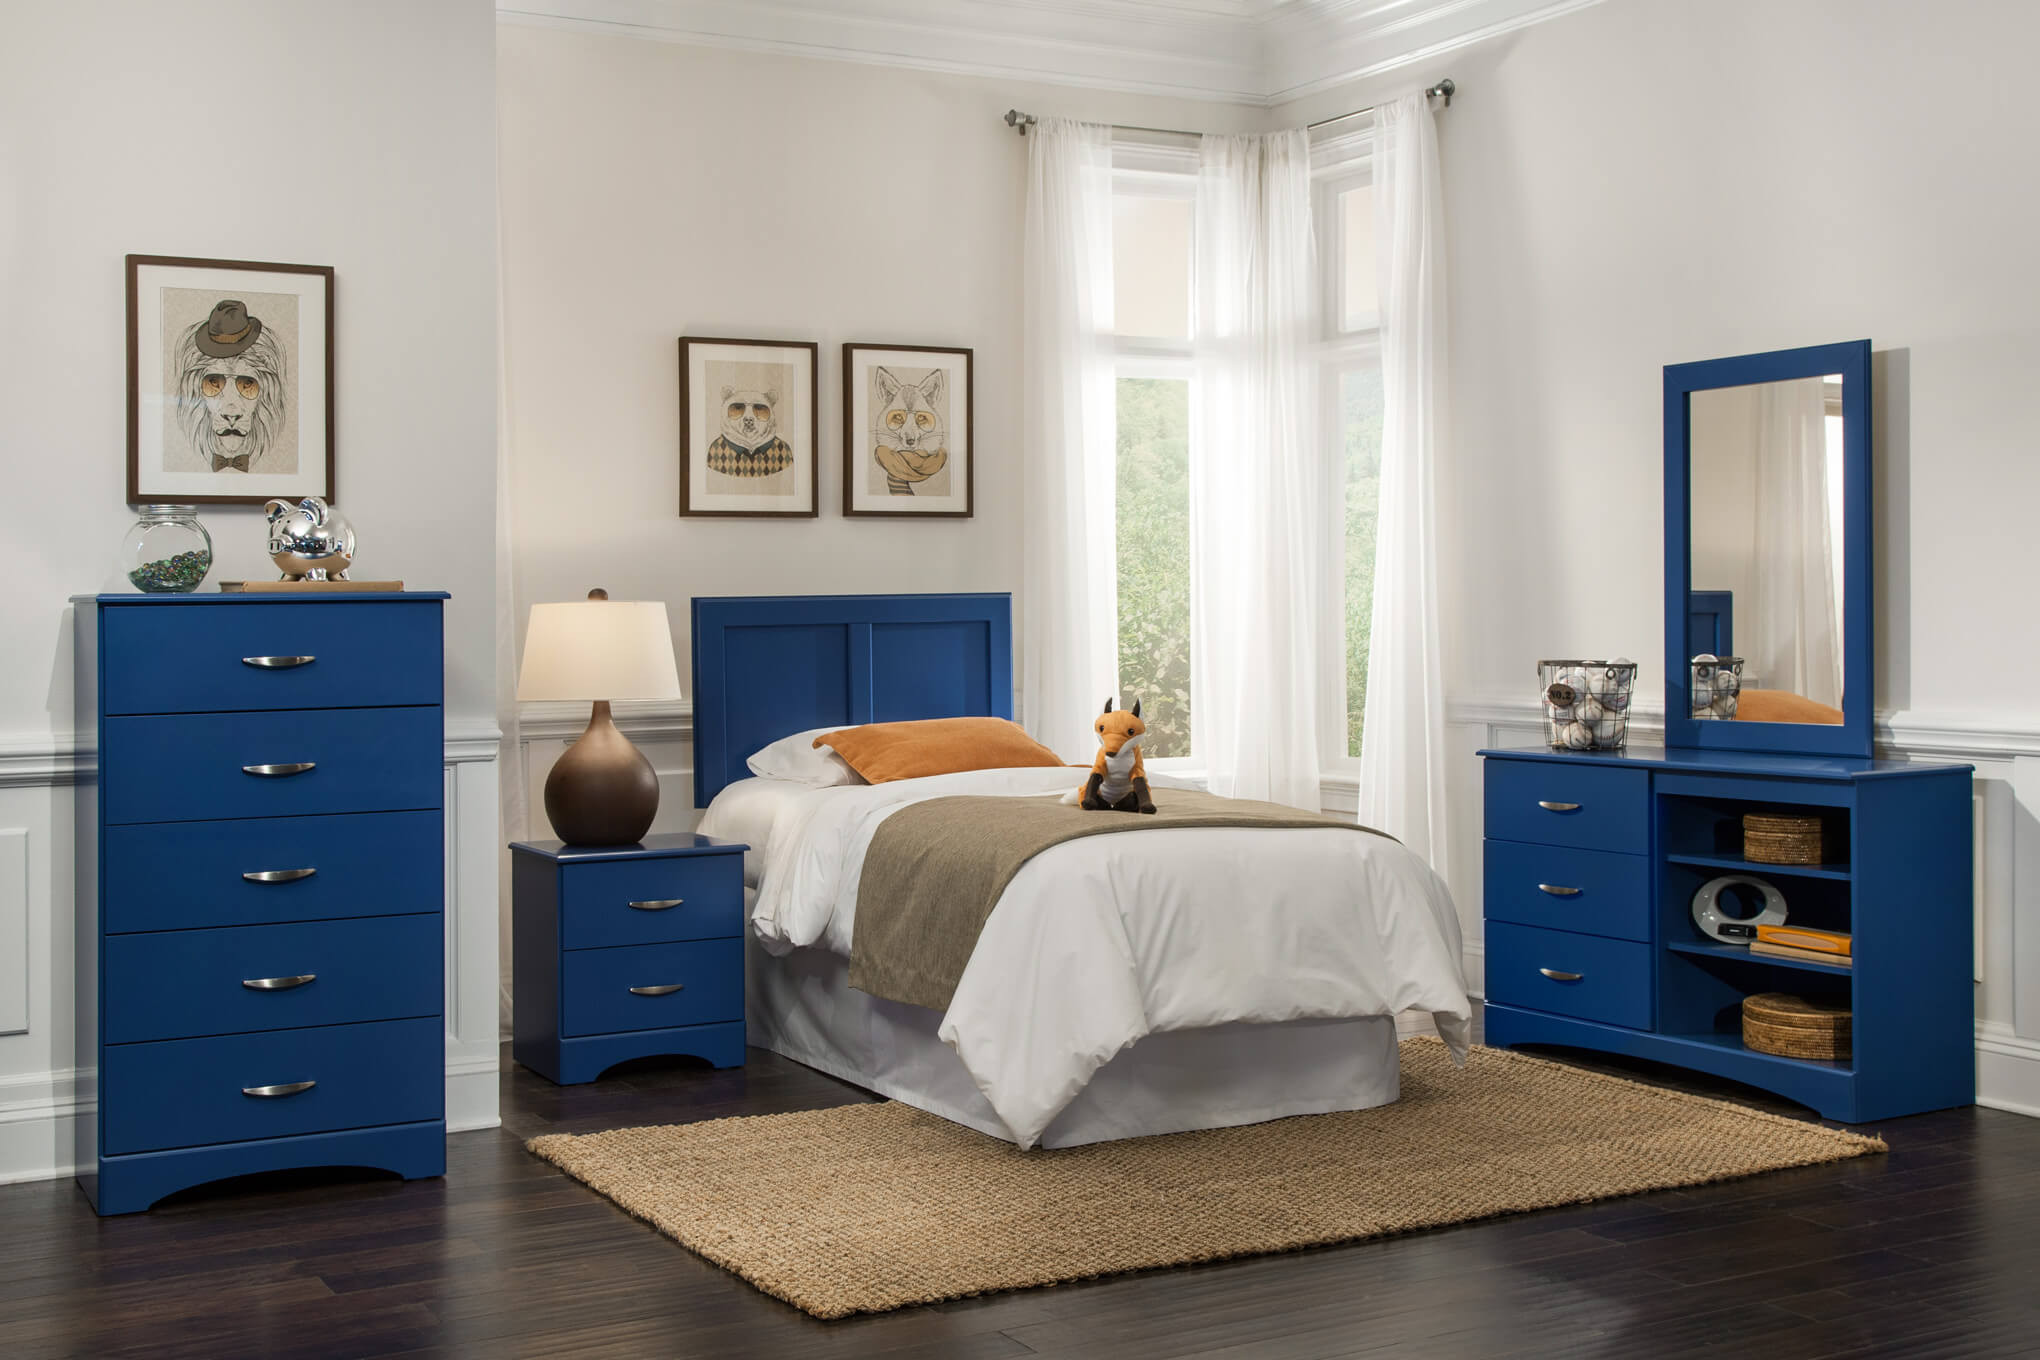 Kids Bedroom Dresser
 Kith Royal Blue Bedroom Set